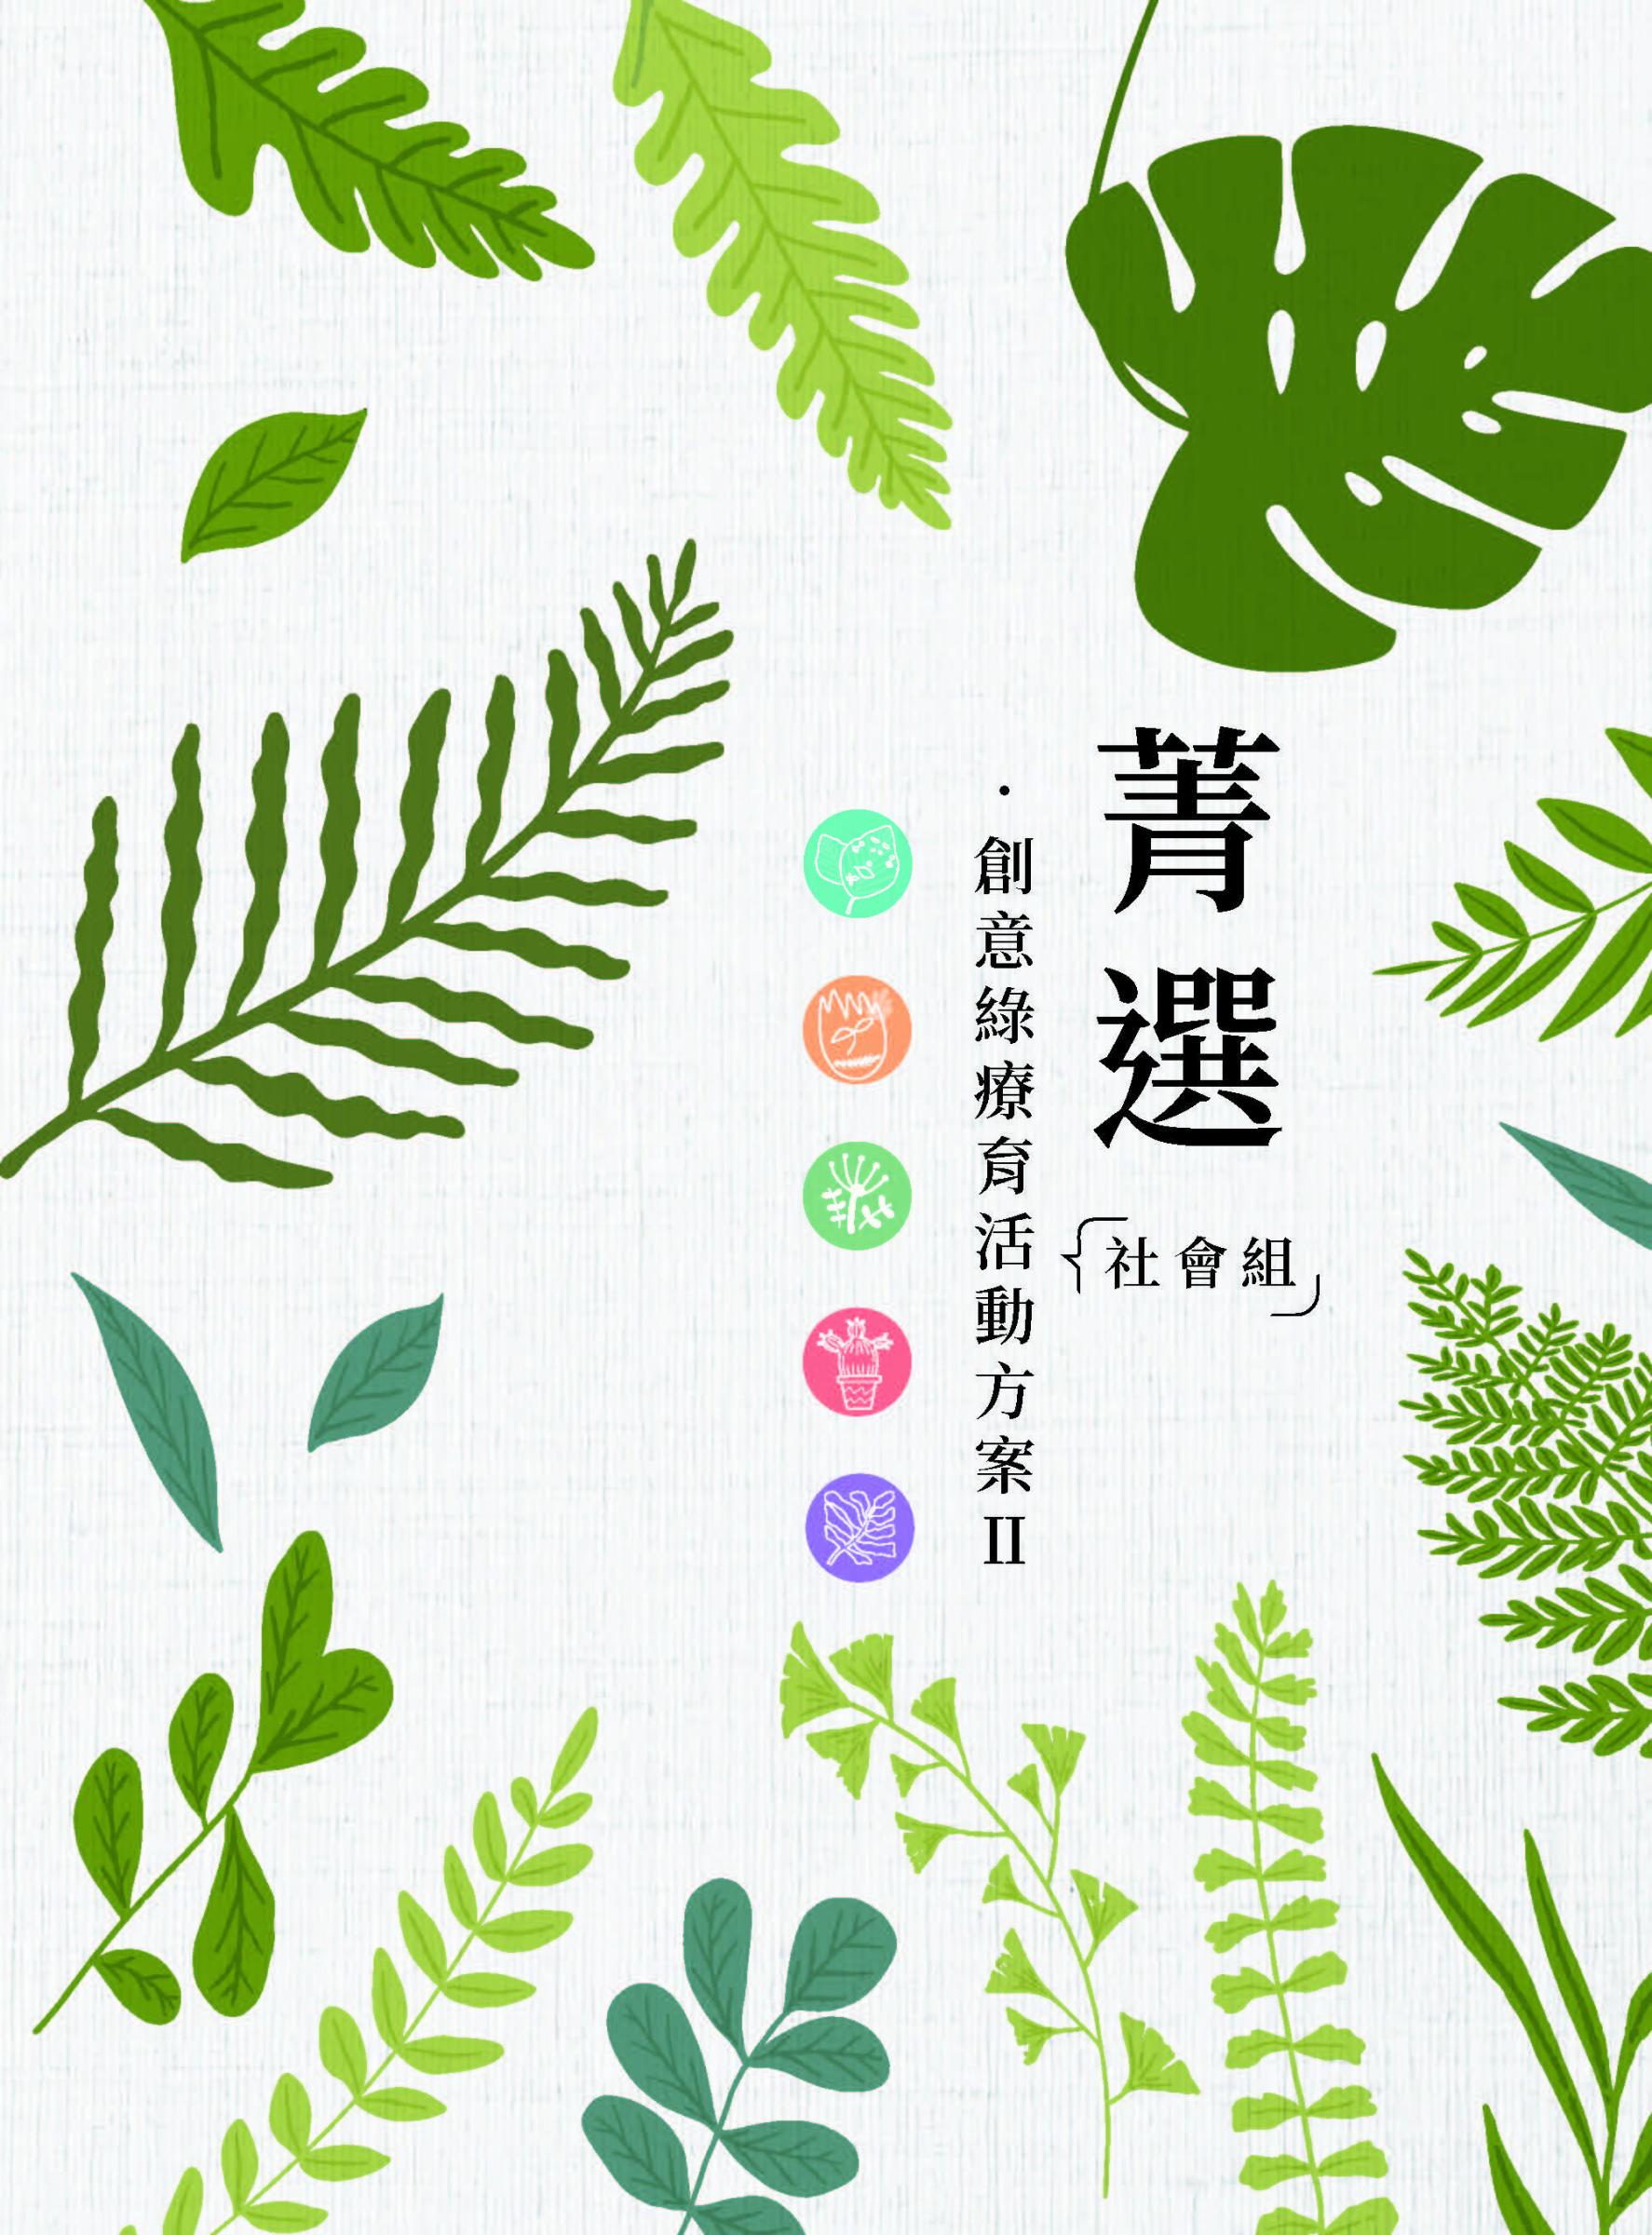 特刊第152號－菁選•創意綠療育活動方案Ⅱ 社會組-封面